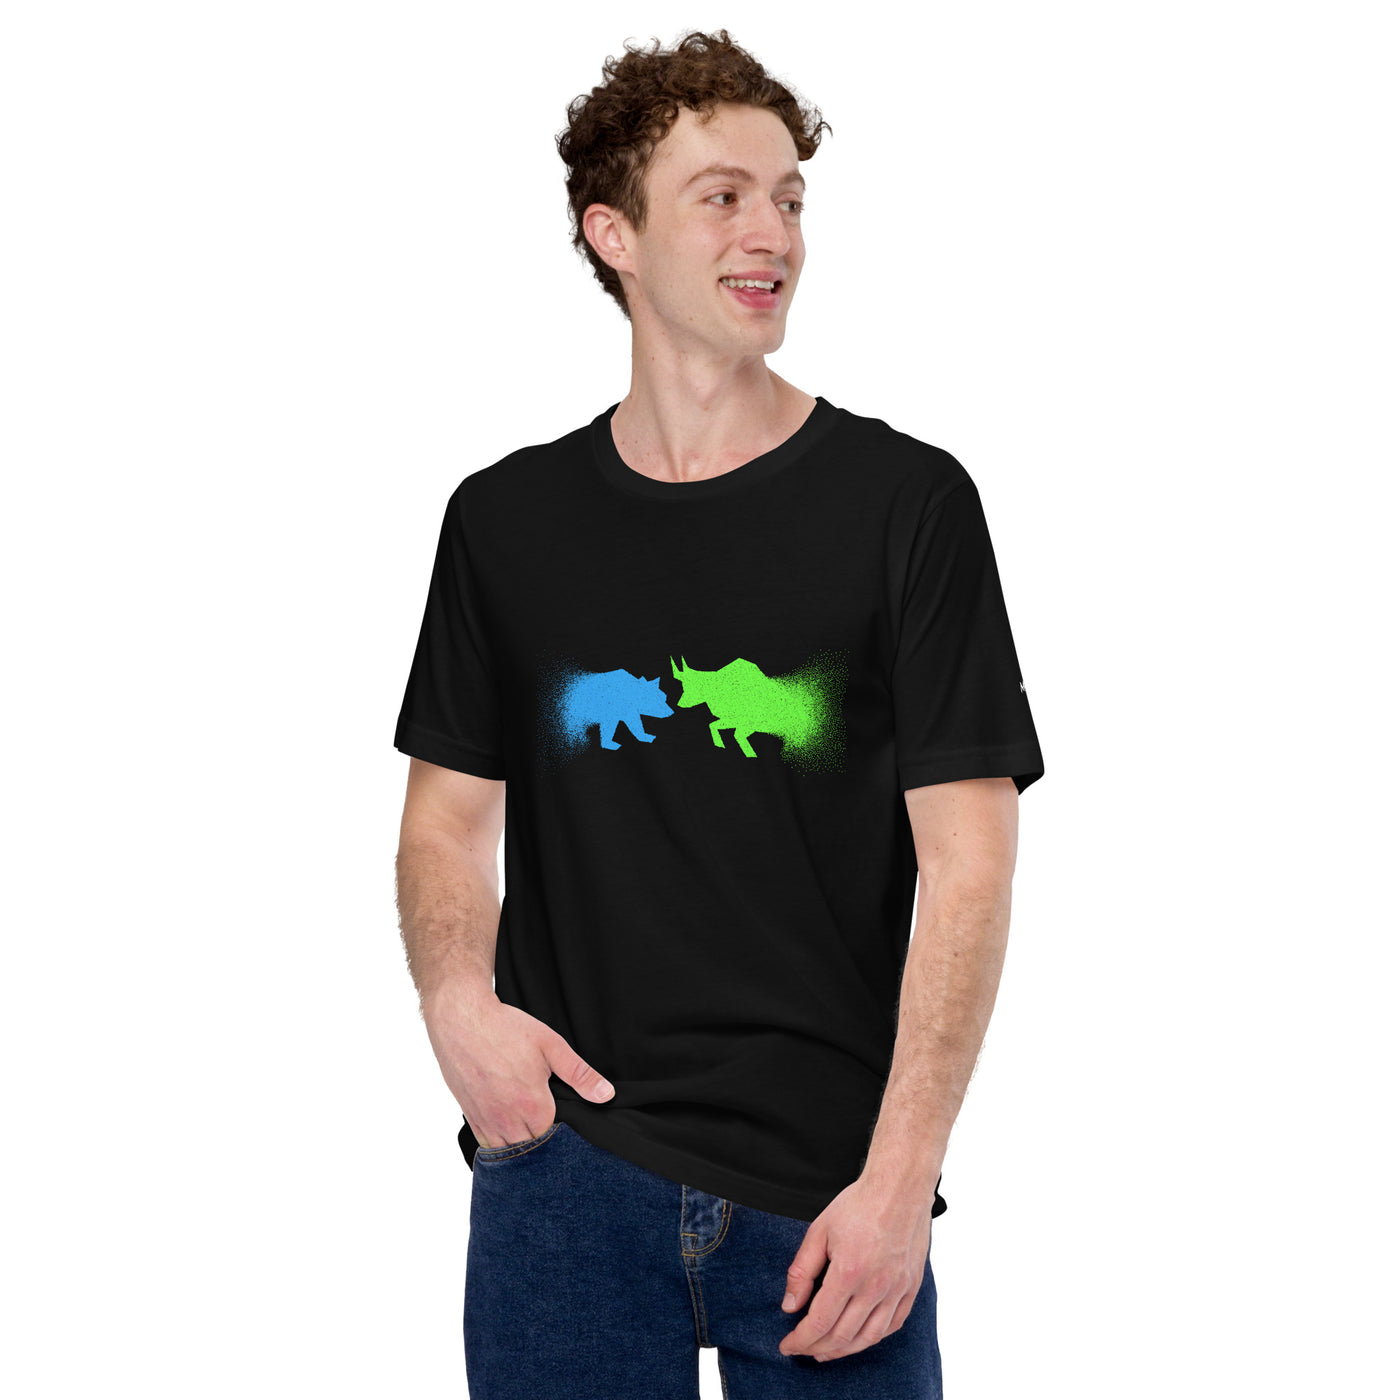 Bearish And Bullish (DB) - Unisex t-shirt